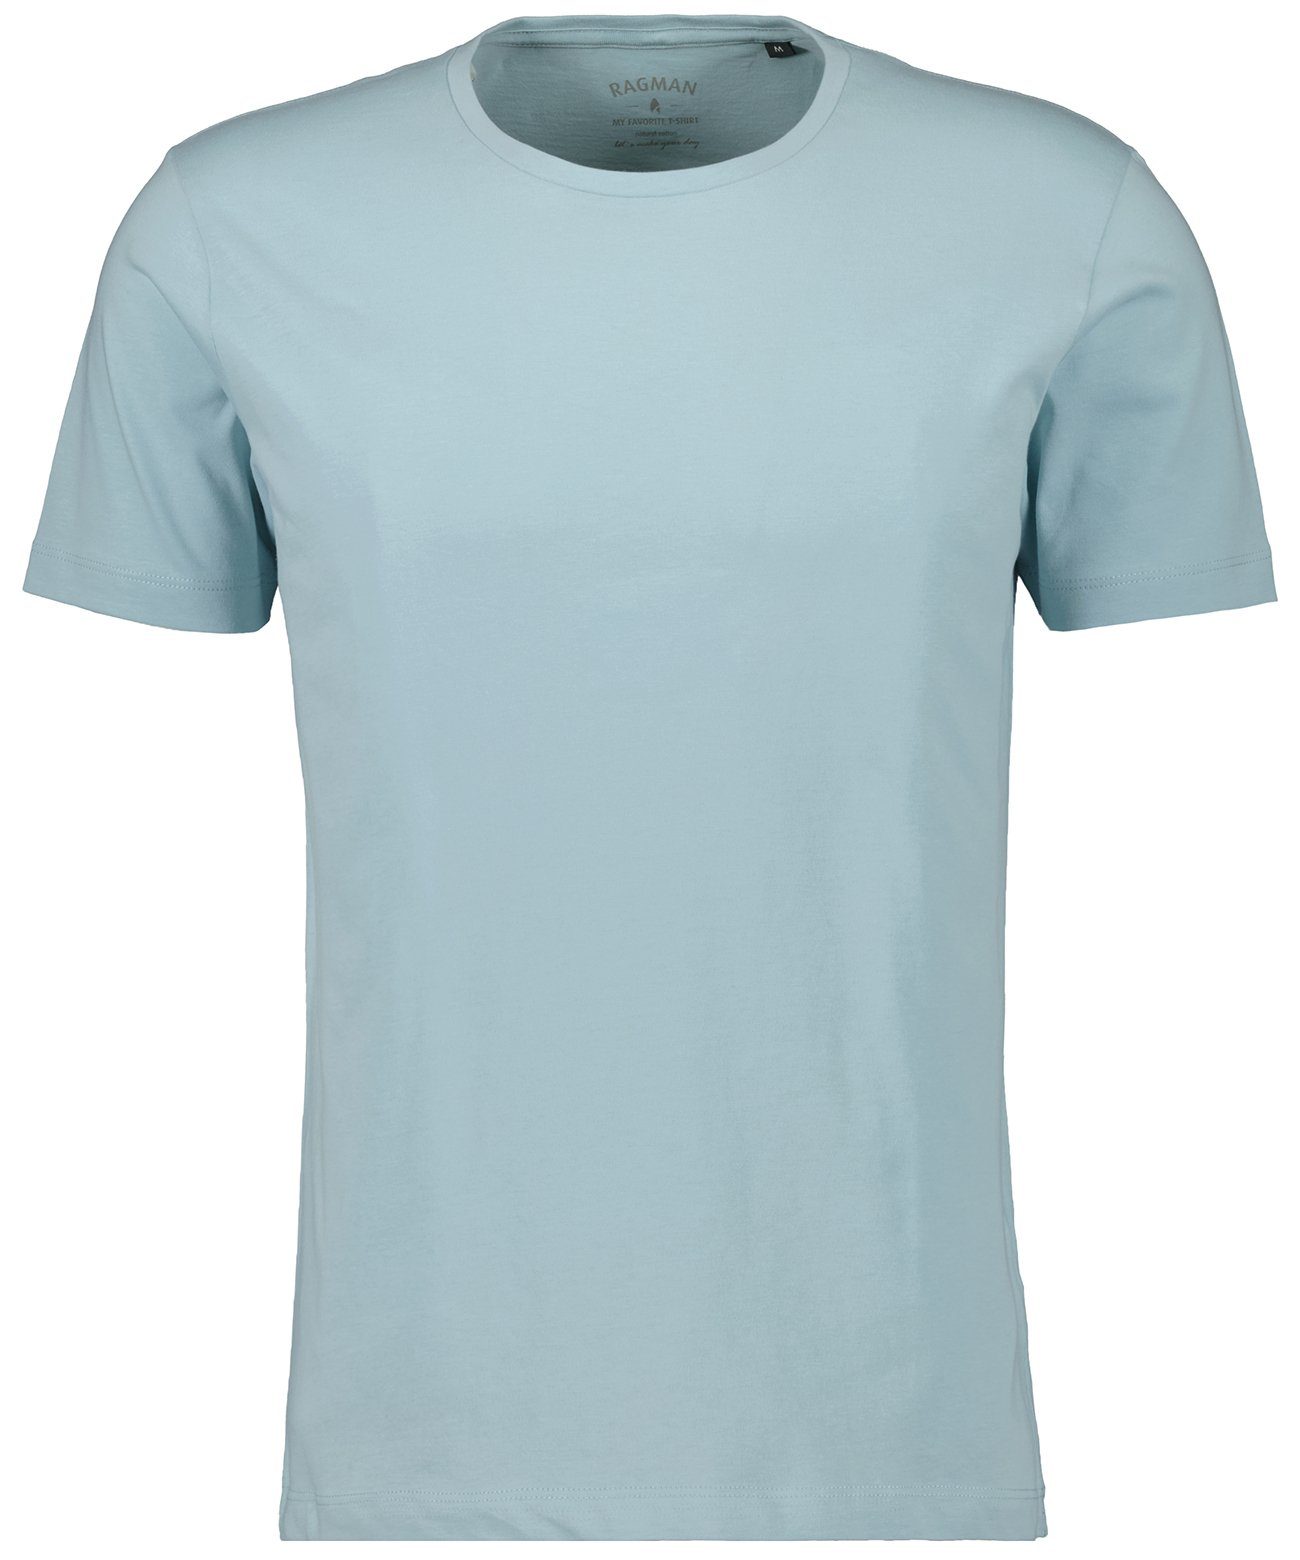 RAGMAN T-Shirt Hellblau-750